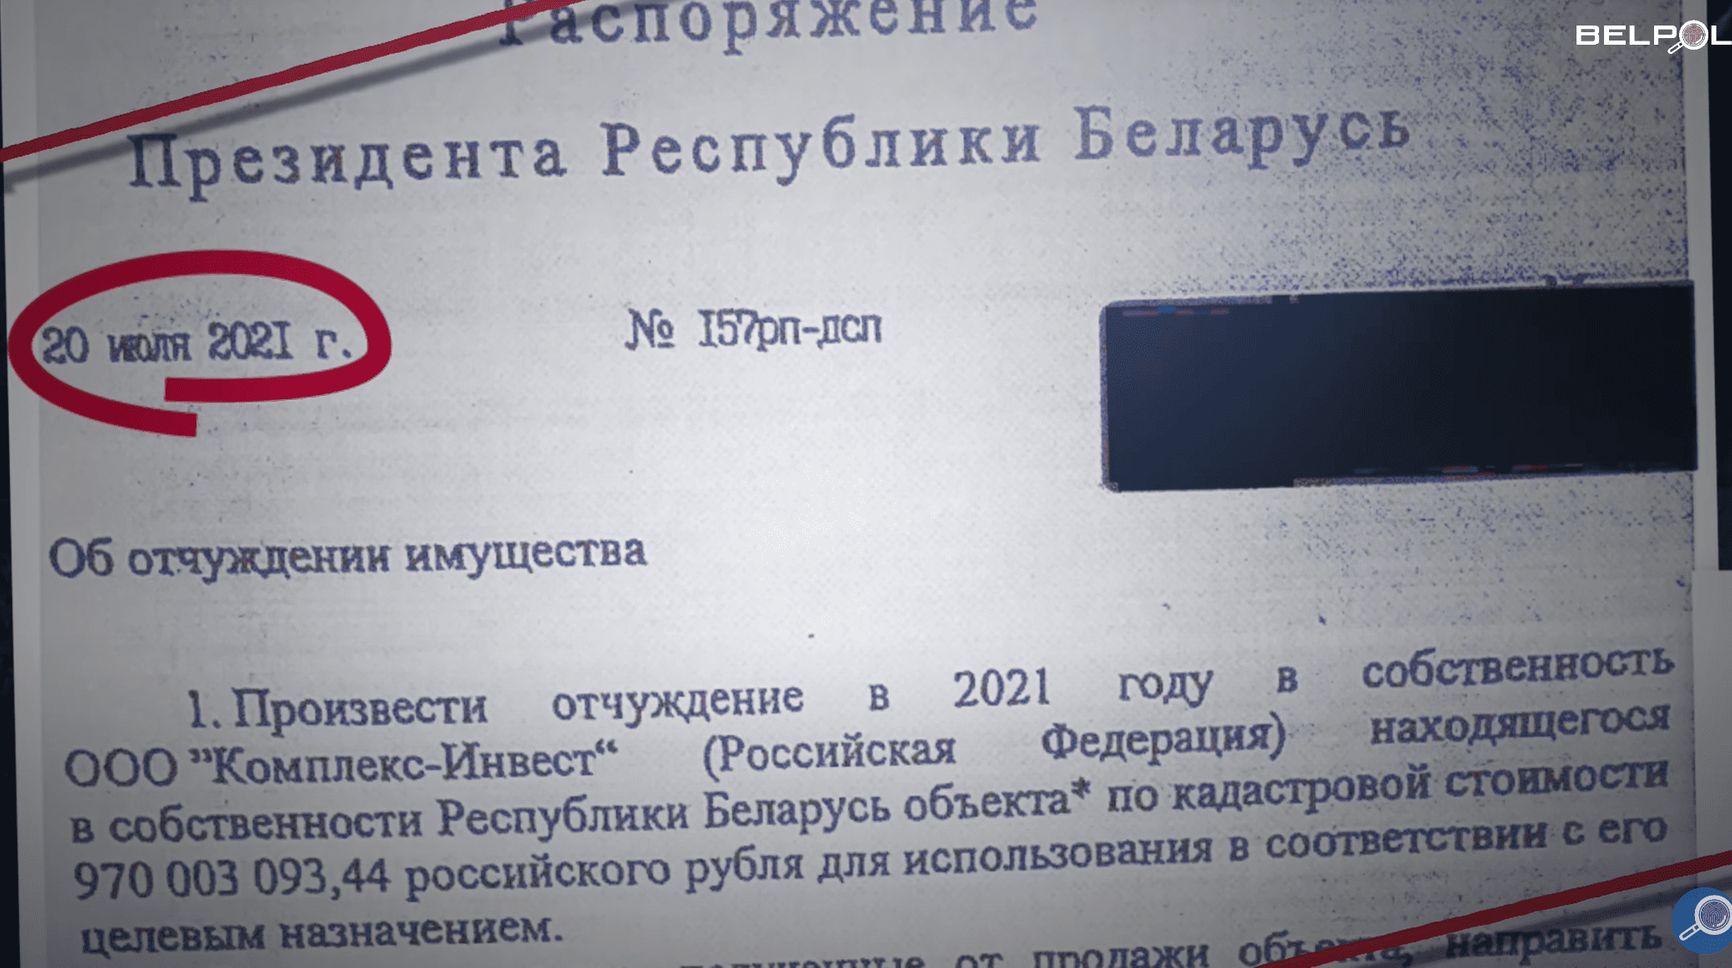 Секретное распоряжение № 1 — об отчуждении участка по цене в 970 млн рублей